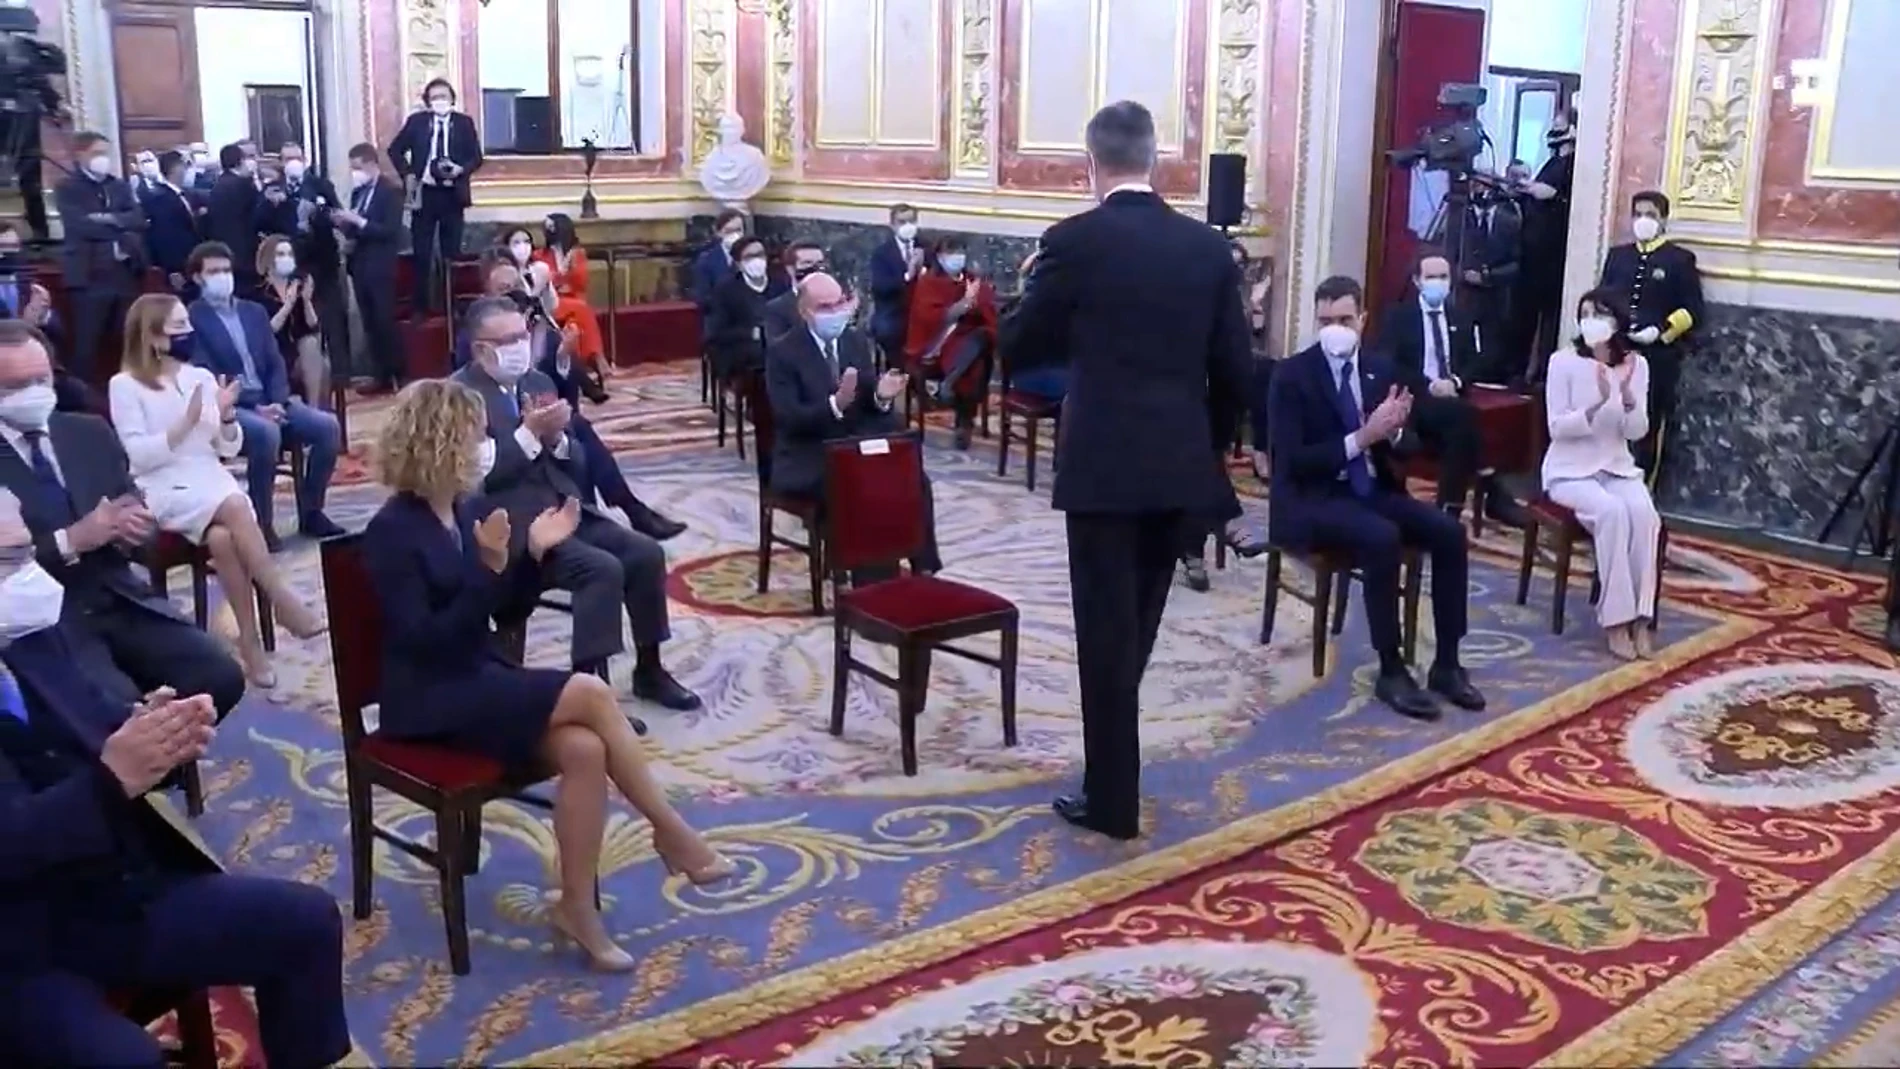 Todos los asistentes, menos Pablo iglesias, aplauden al rey Felipe VI tras su discurso en el Salón de los pasos perdidos del Congreso de los Diputados, con motivo del 40 aniversario del 23F.